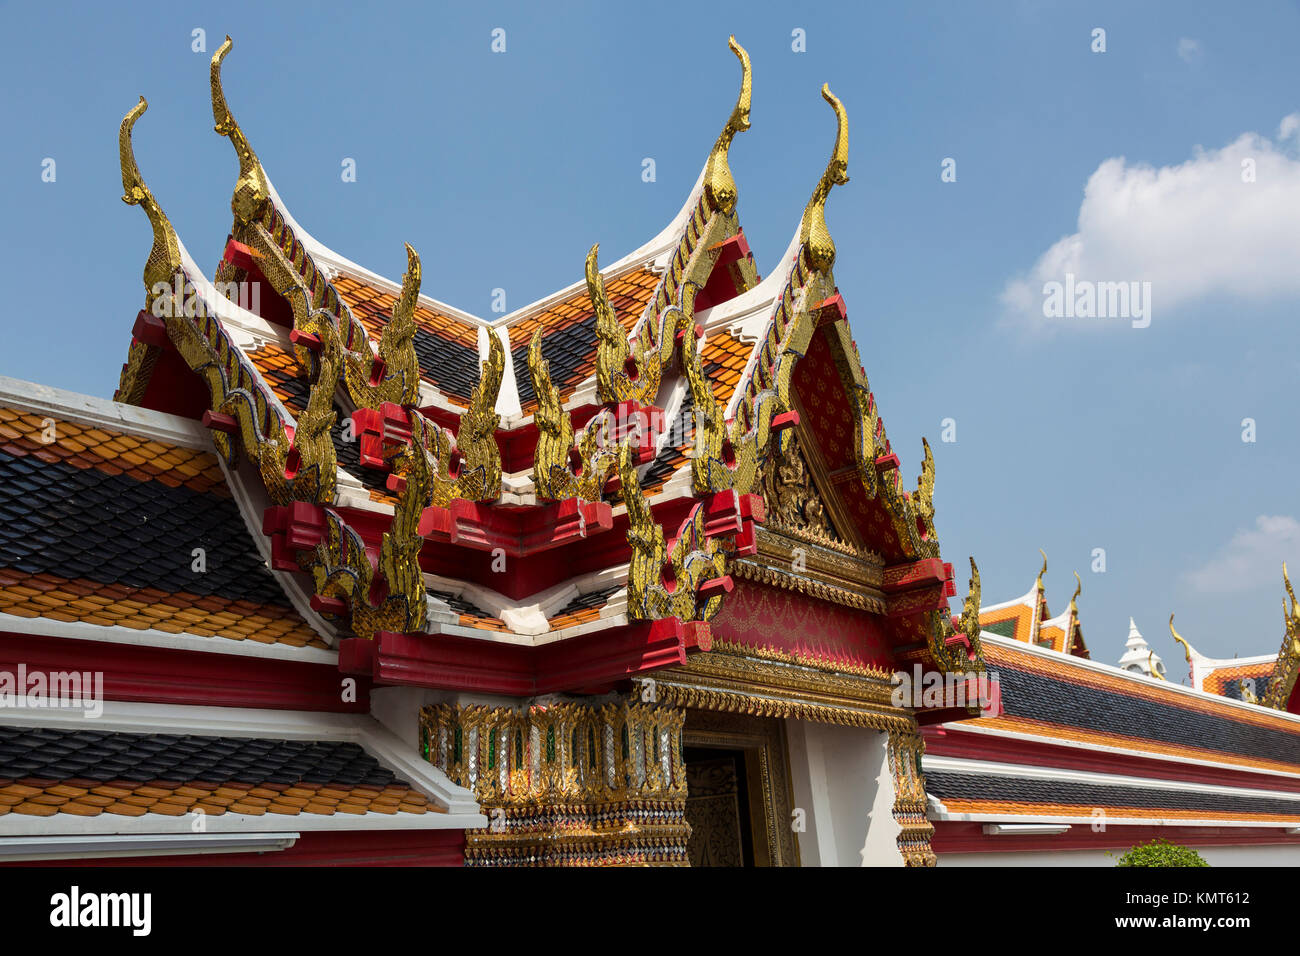 Bangkok, Tailandia. Architettura thailandese, mostrando il chofa, il curling estensioni appuntito in corrispondenza di ciascuna estremità che rappresentano il Garuda, il veicolo di Vishnu. Foto Stock